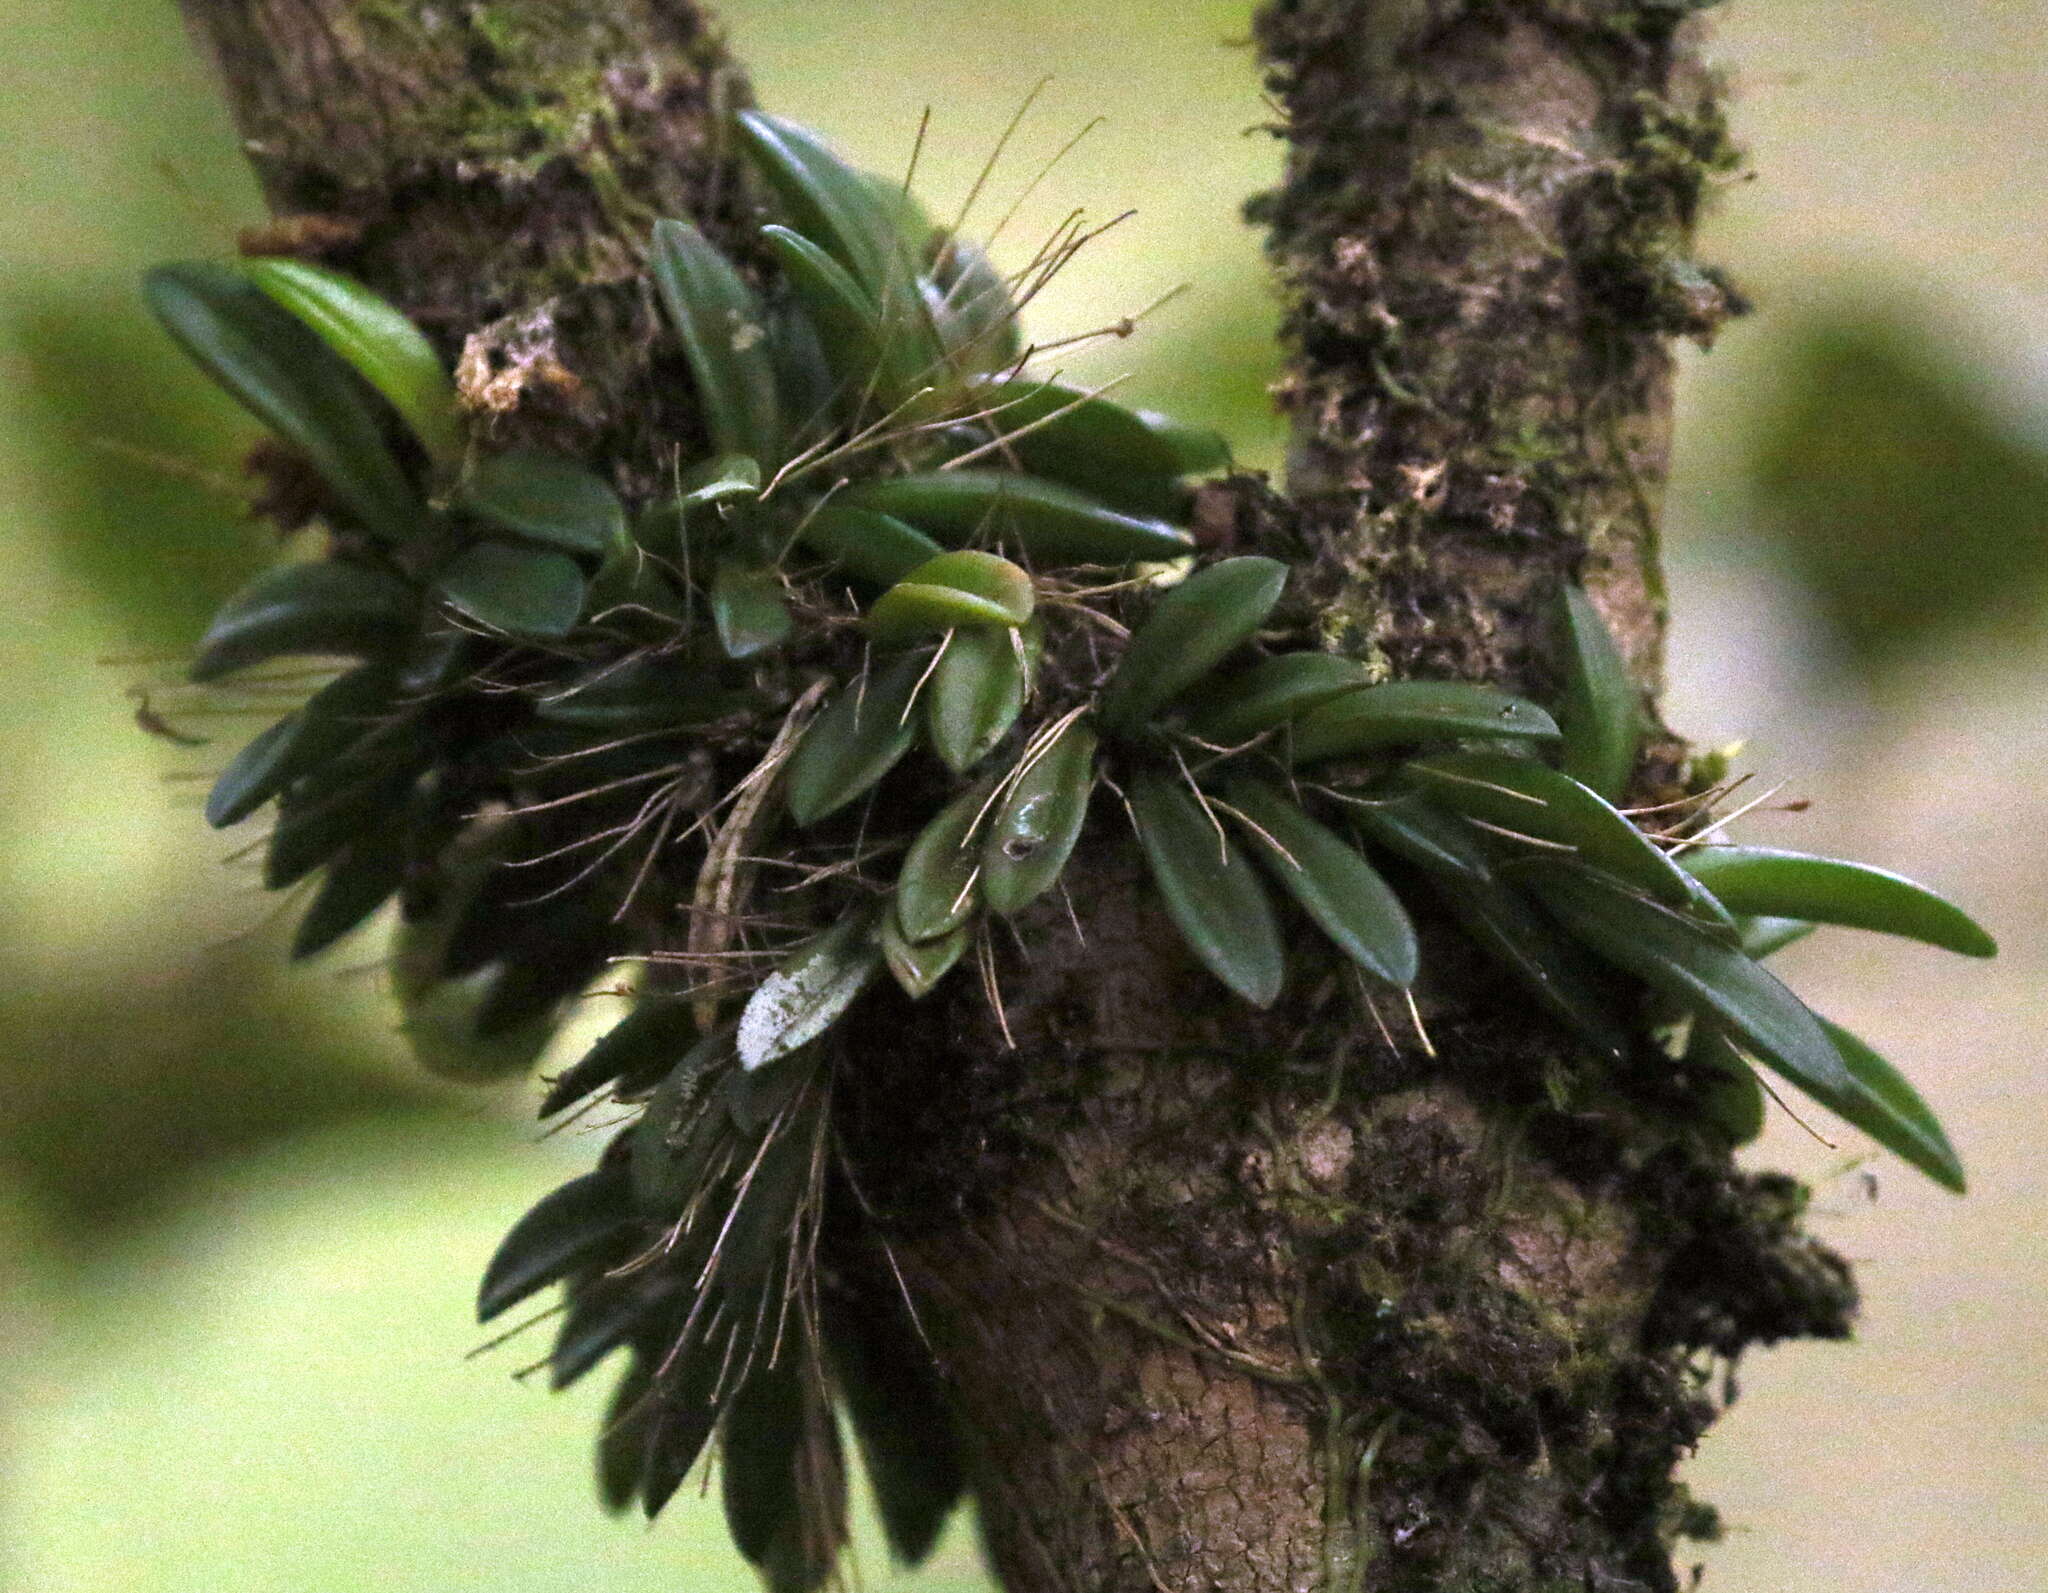 Image of Bulbophyllum macphersonii Rupp